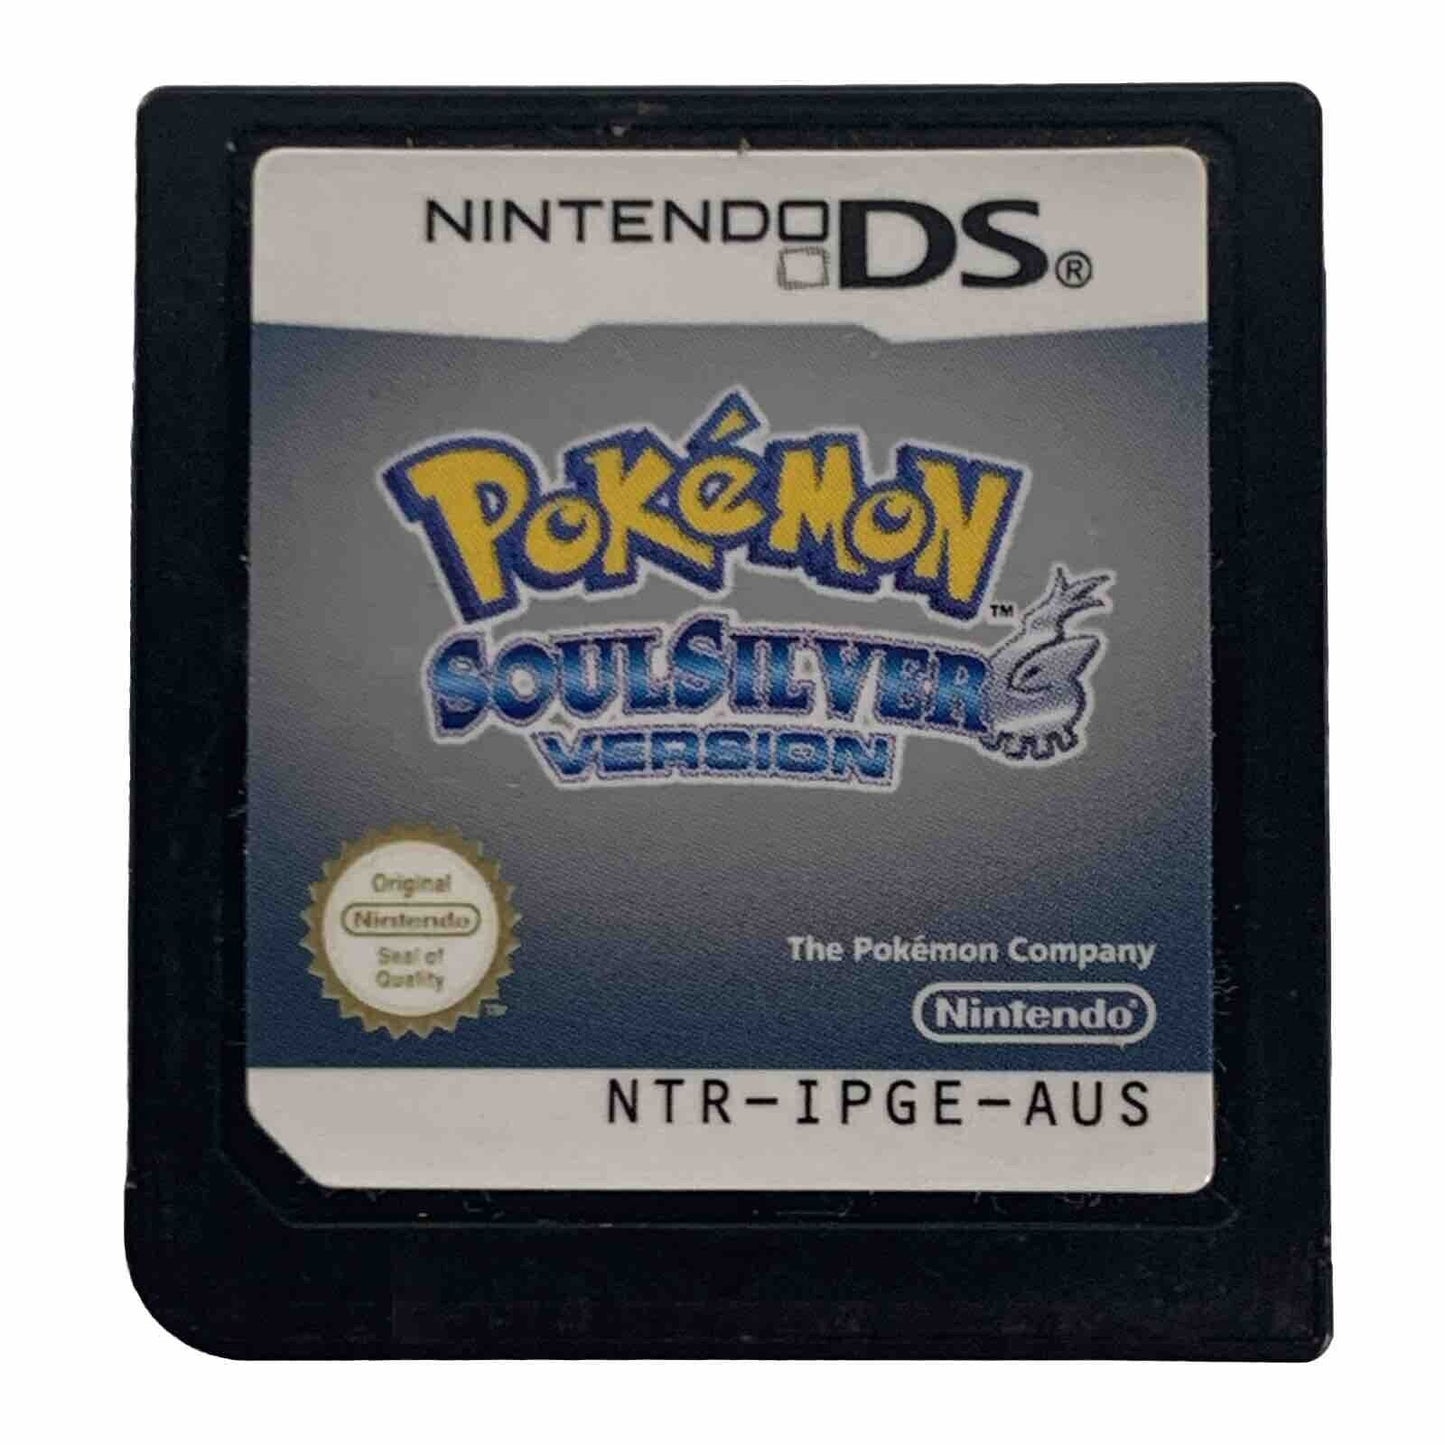 Pokemon Soul Silver Version AUS PAL Nintendo DS Cartridge